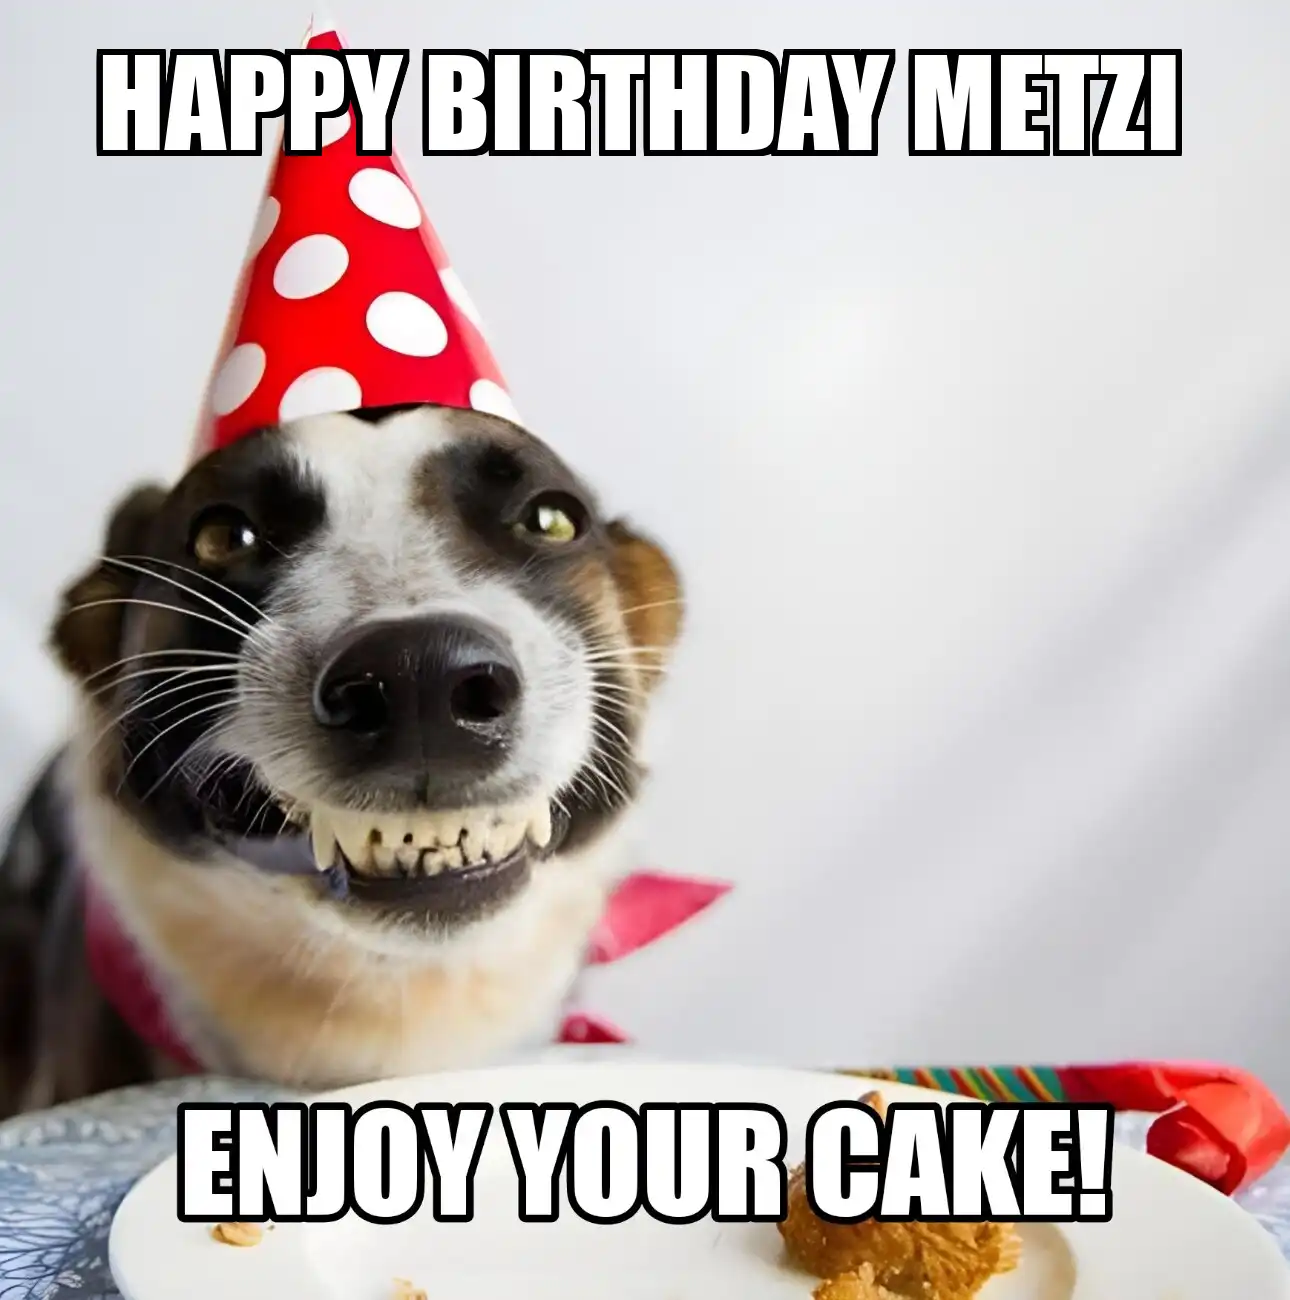 Happy Birthday Metzi Enjoy Your Cake Dog Meme